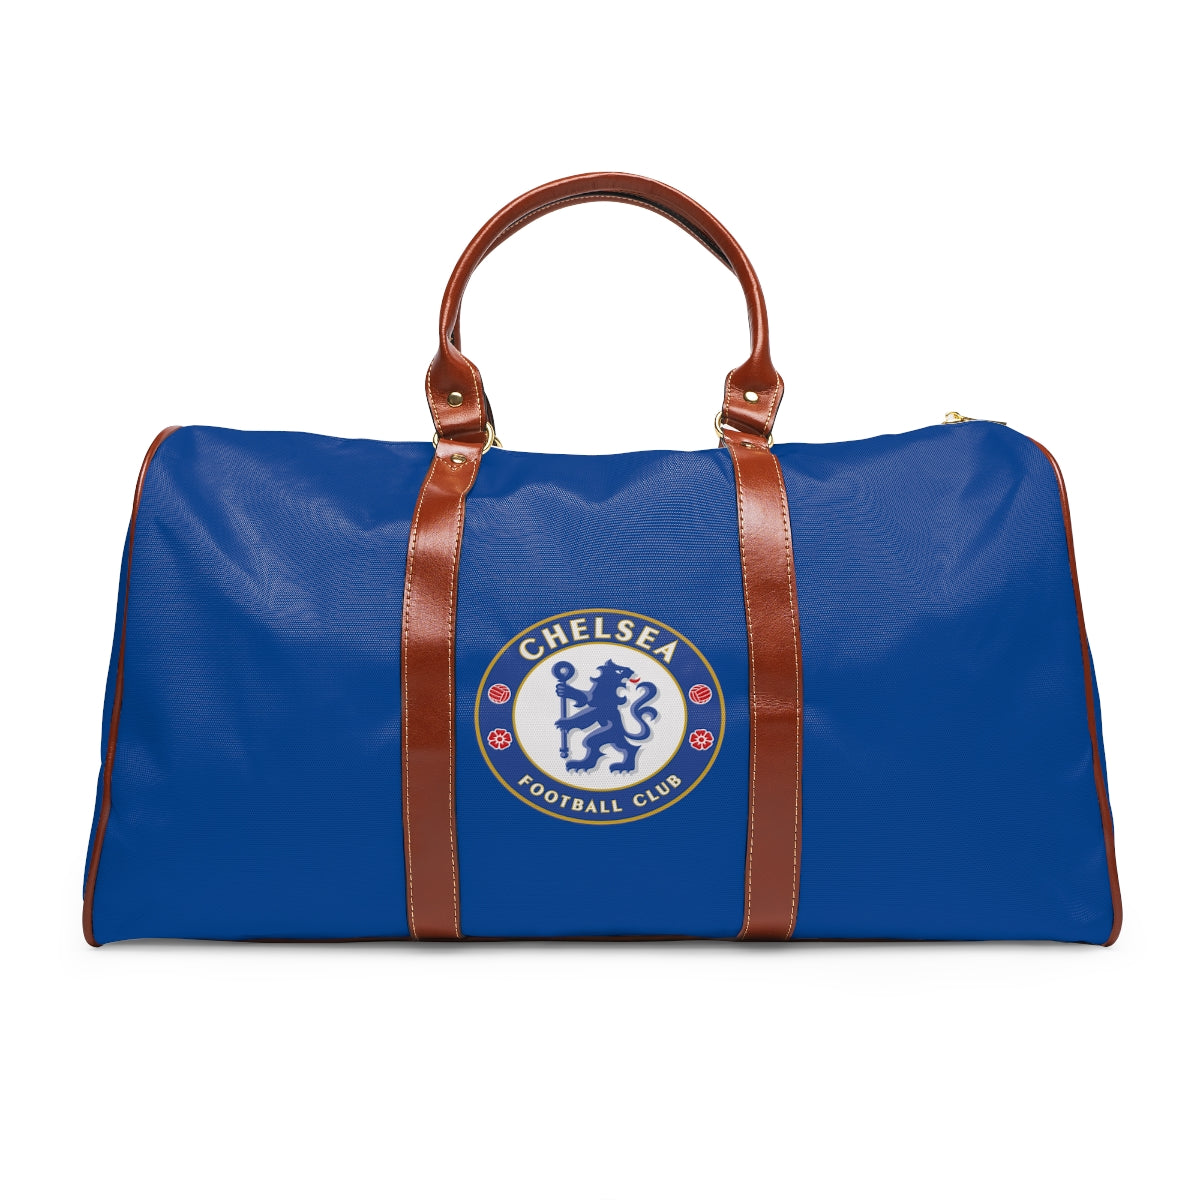 Chelsea Waterproof Travel Bag